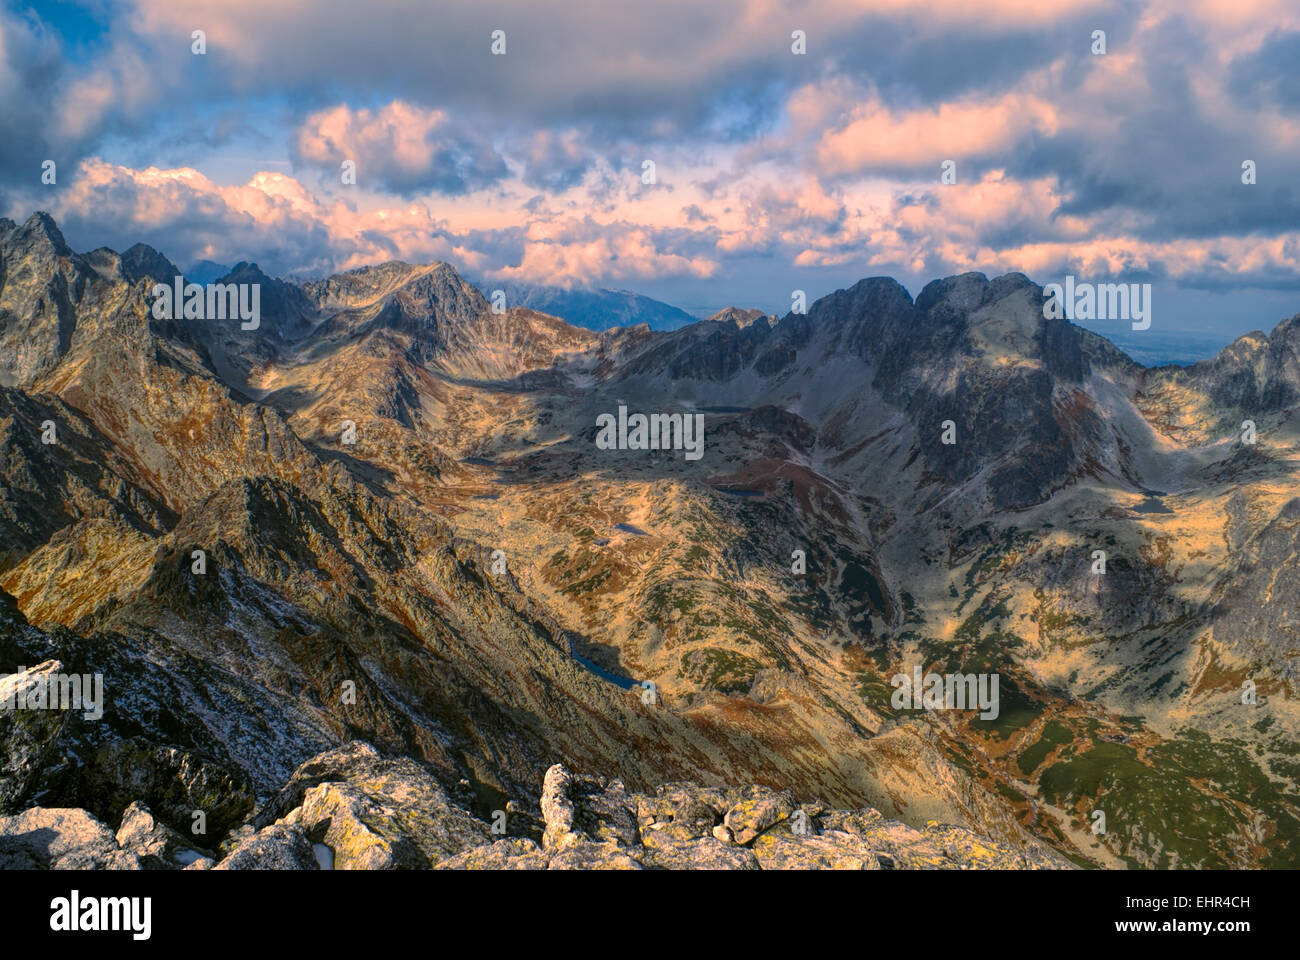 Las majestuosas cimas de los Altos Tatras en Eslovaquia de Slavkovsky Stit Foto de stock